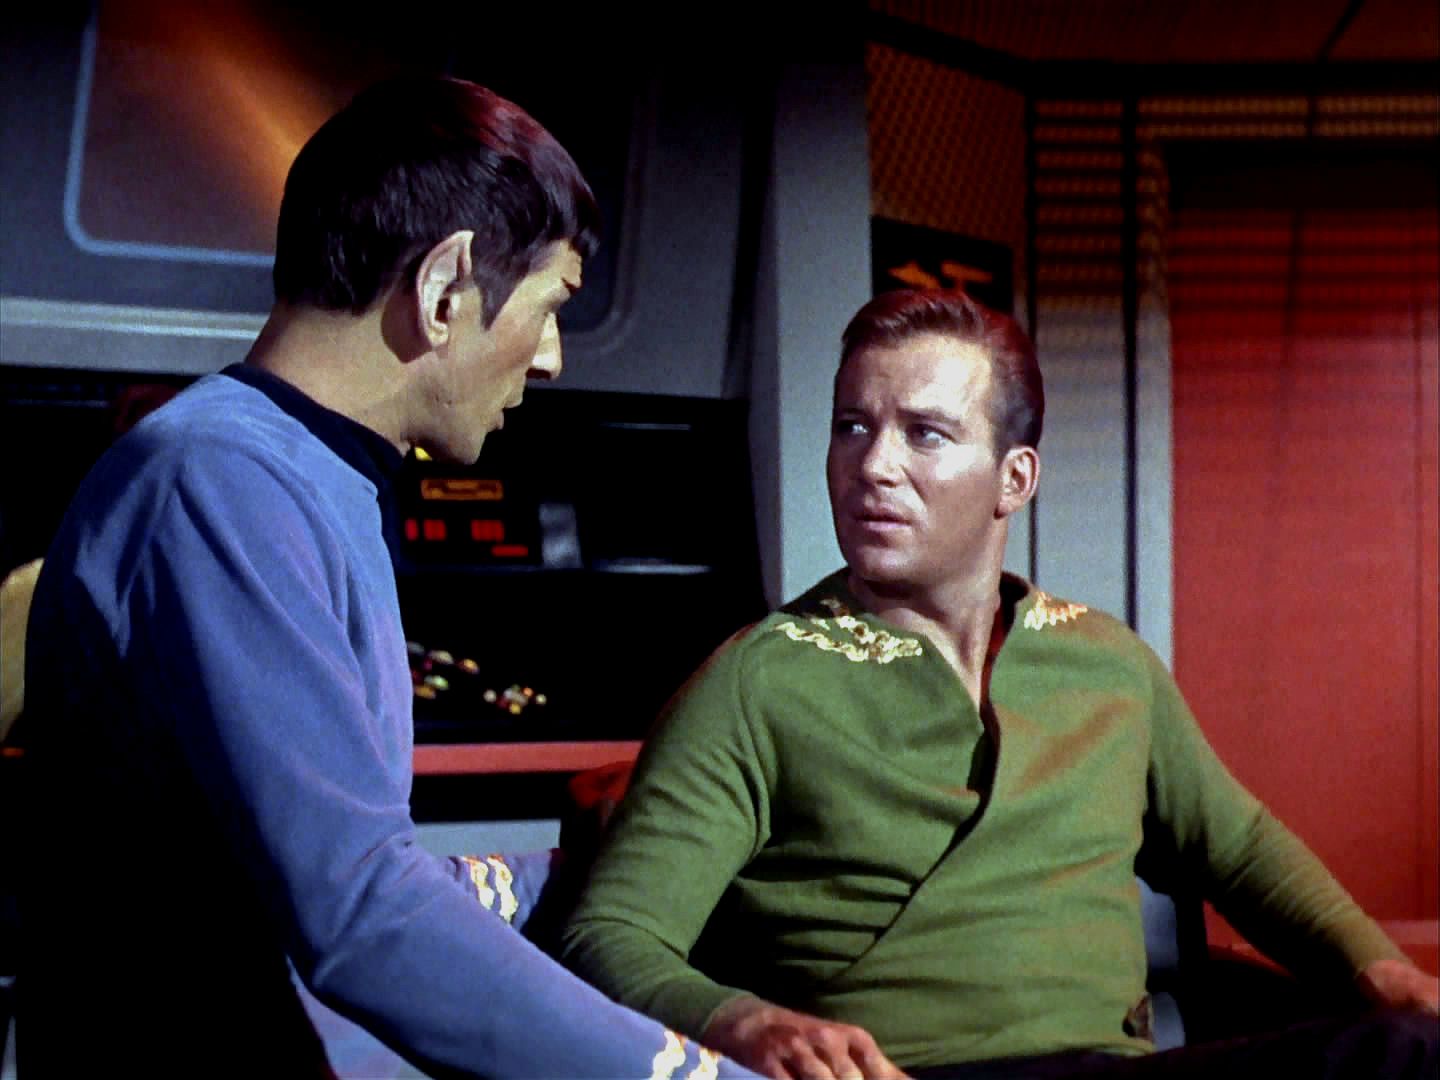 Dalším Kirkovým problémem je, že ztratil vlastnosti, které z něj dělaly dobrého kapitána, ty jsou u jeho dvojníka. A dole na planetě začíná opravdu mrznout a výsadek nejde transportovat.